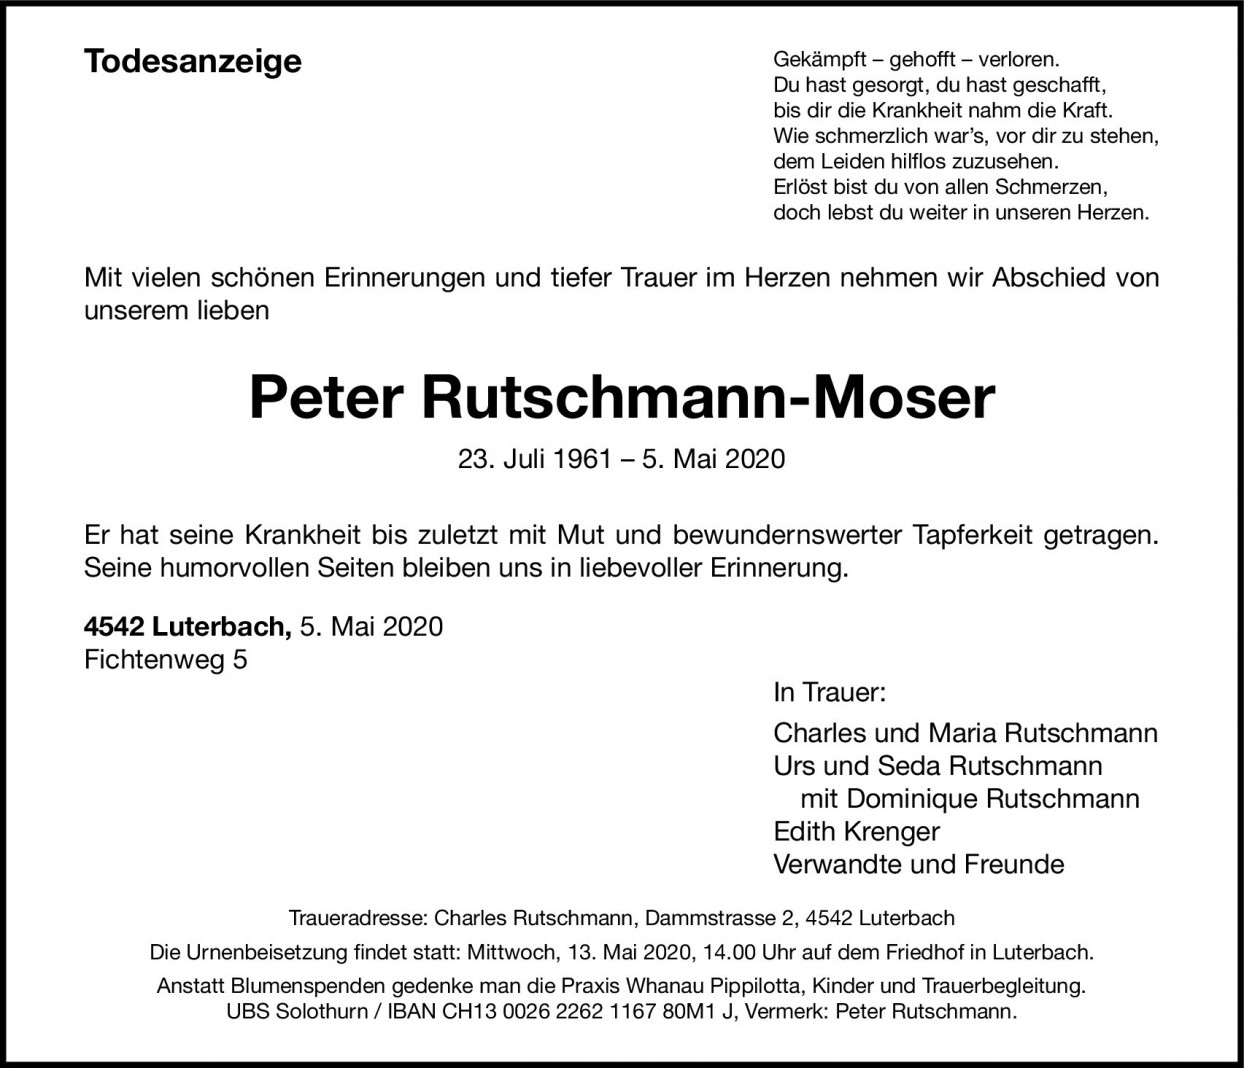 Peter Rutschmann-Moser